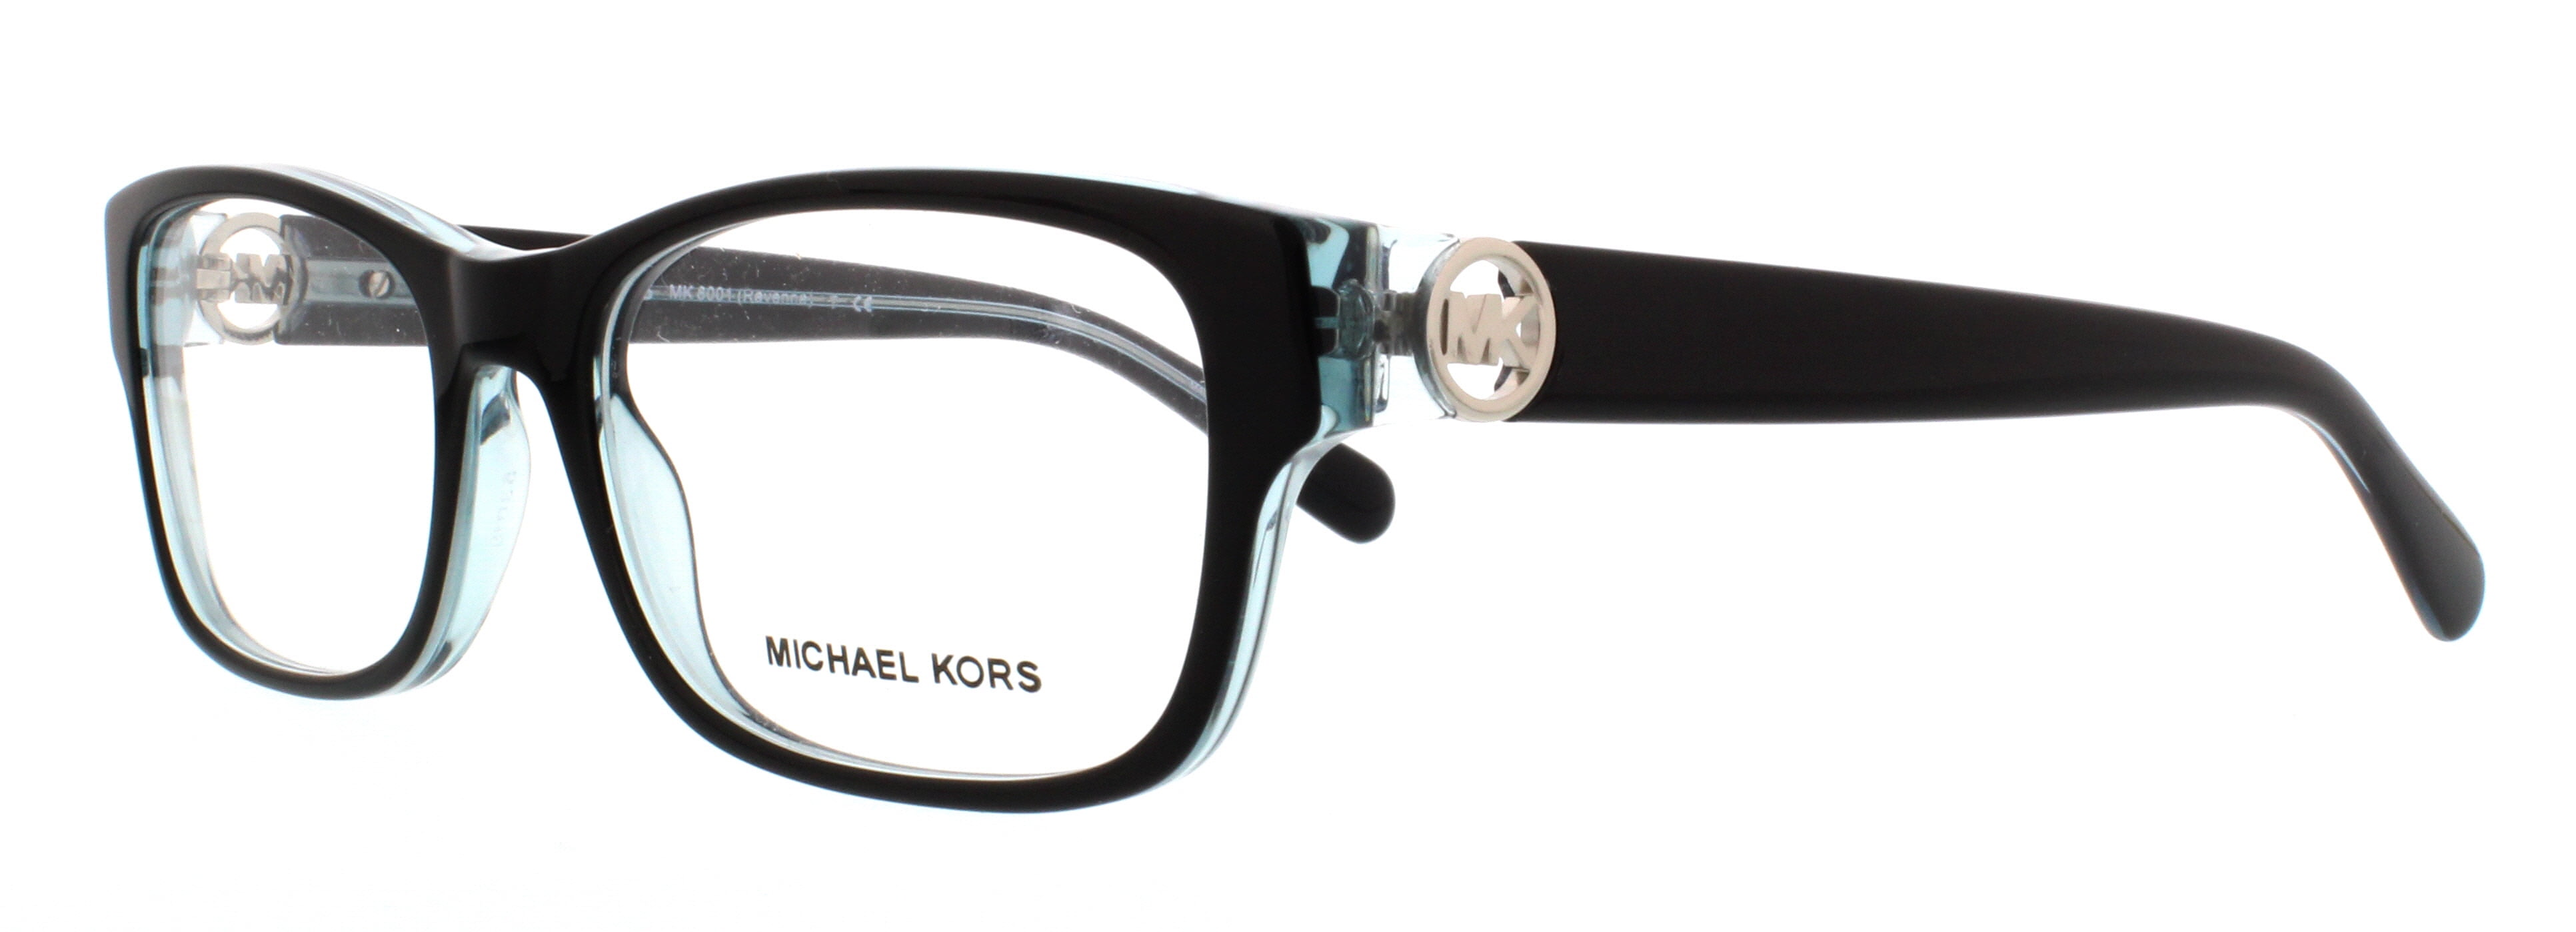 michael kors blue light glasses